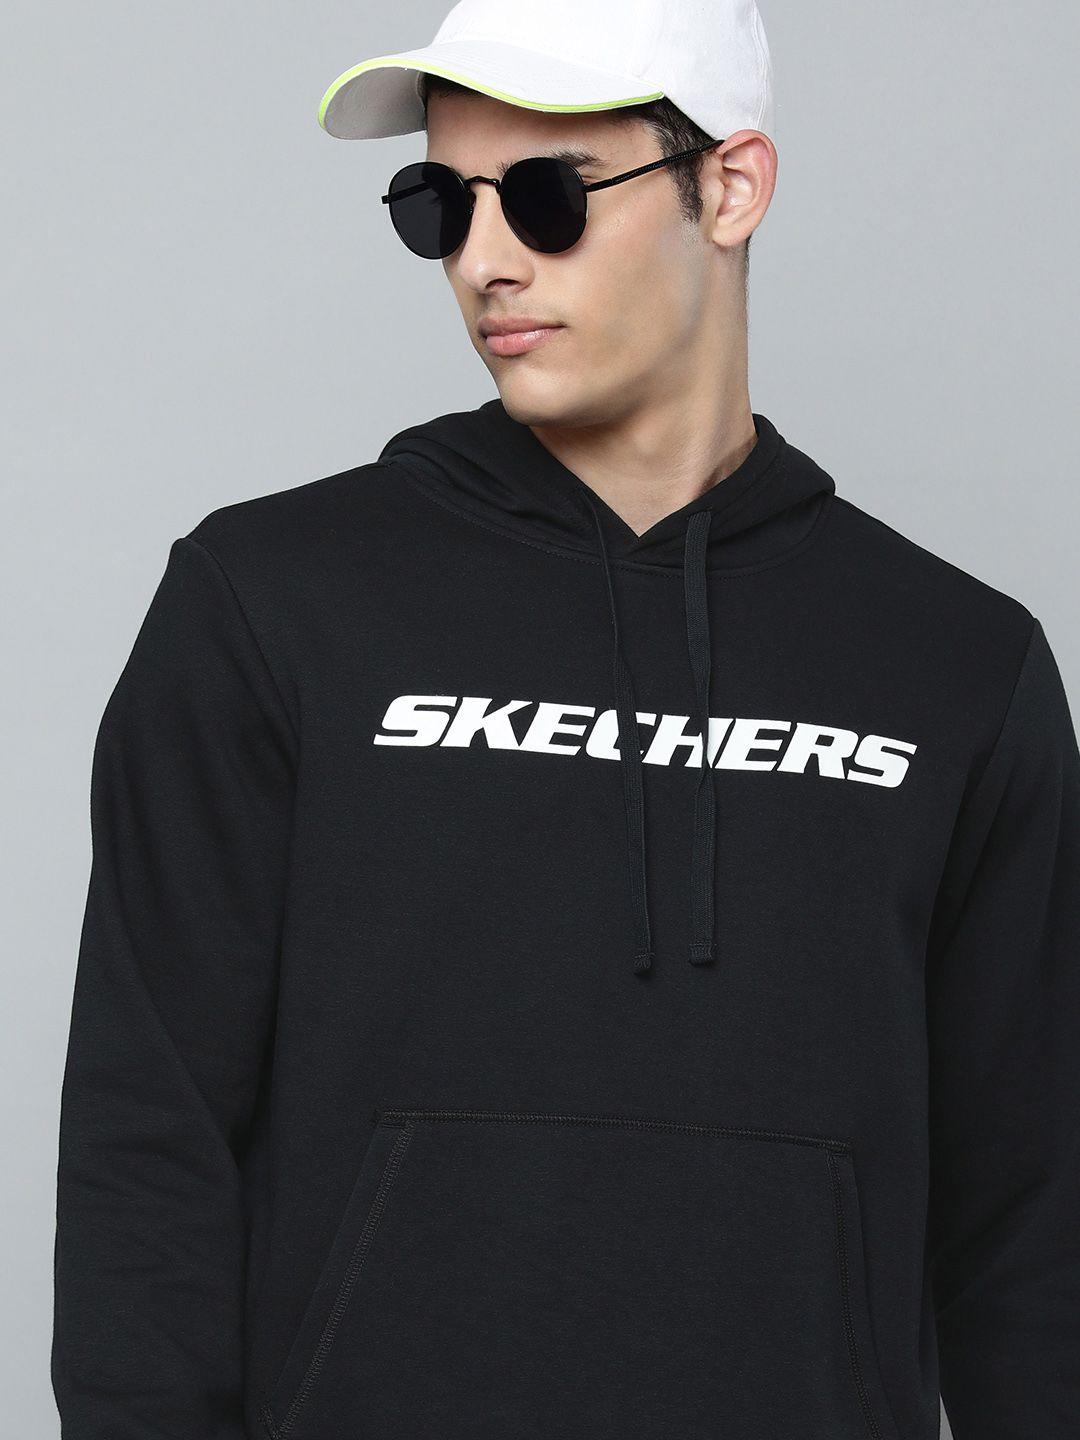 skechers-men-black-brand-logo-print-hooded-heritage-ii-pullover-sweatshirt